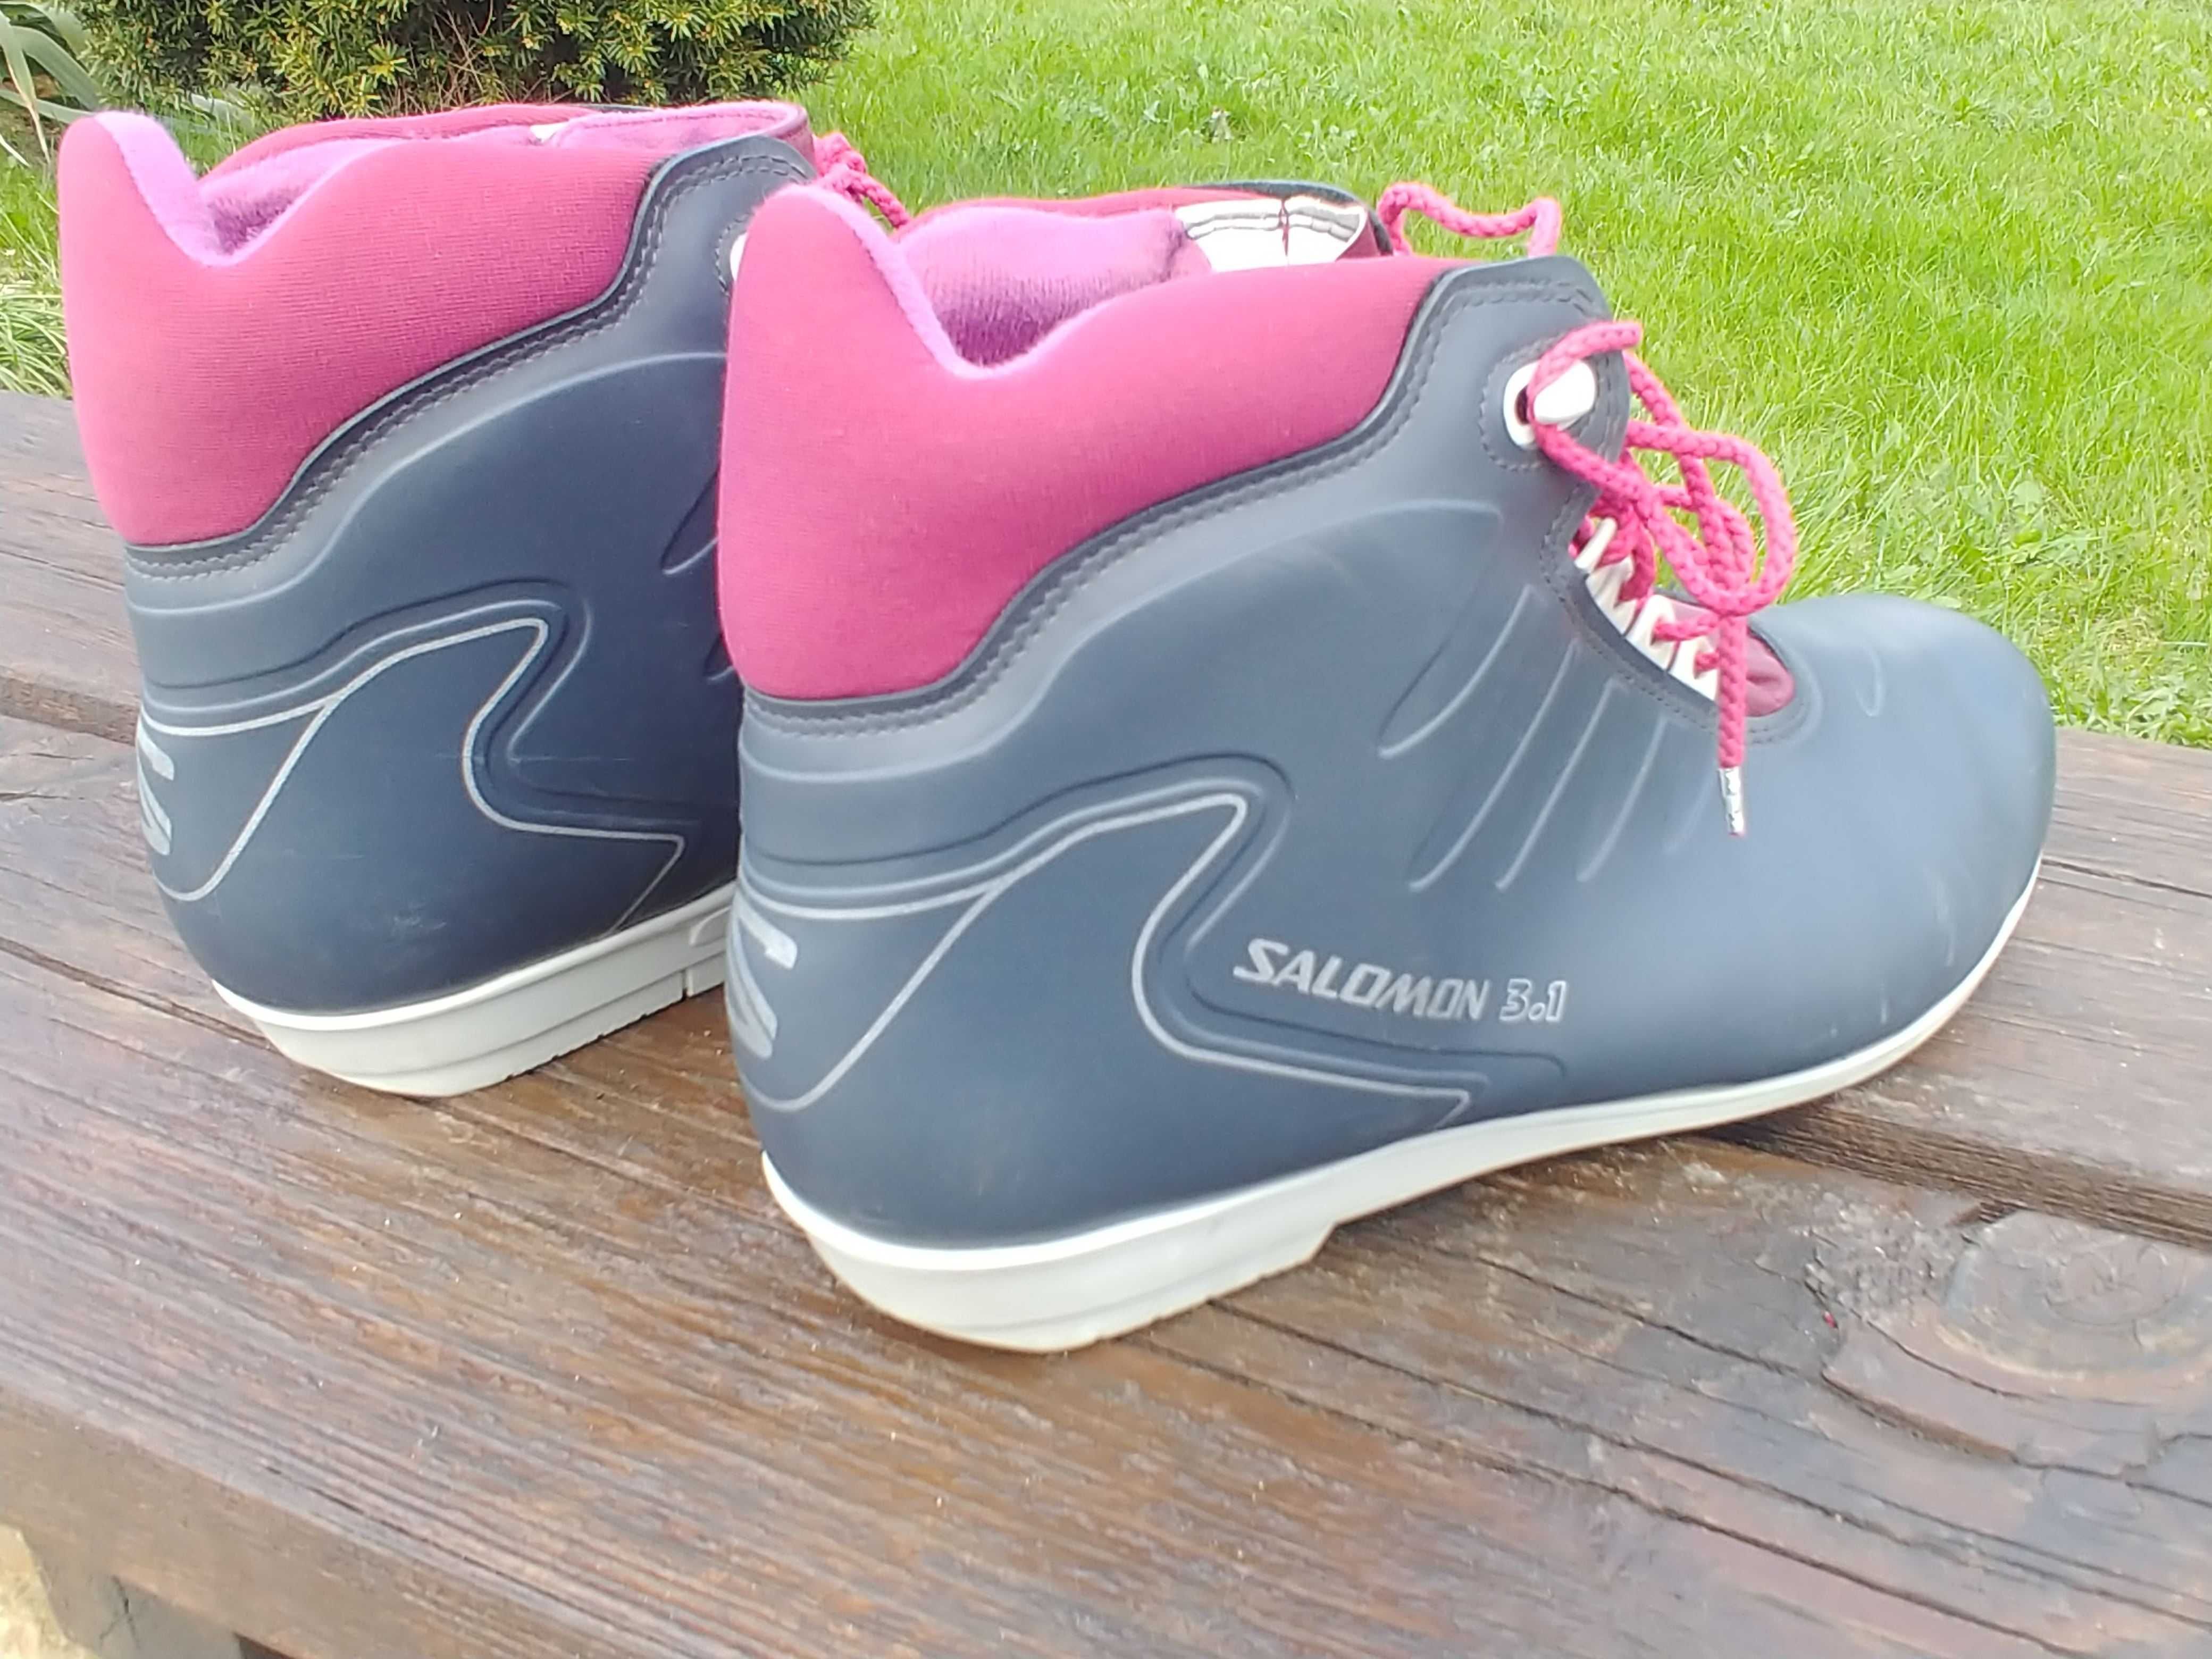 Buty do nart biegowych biegówki SALOMON 3.1 roz 47